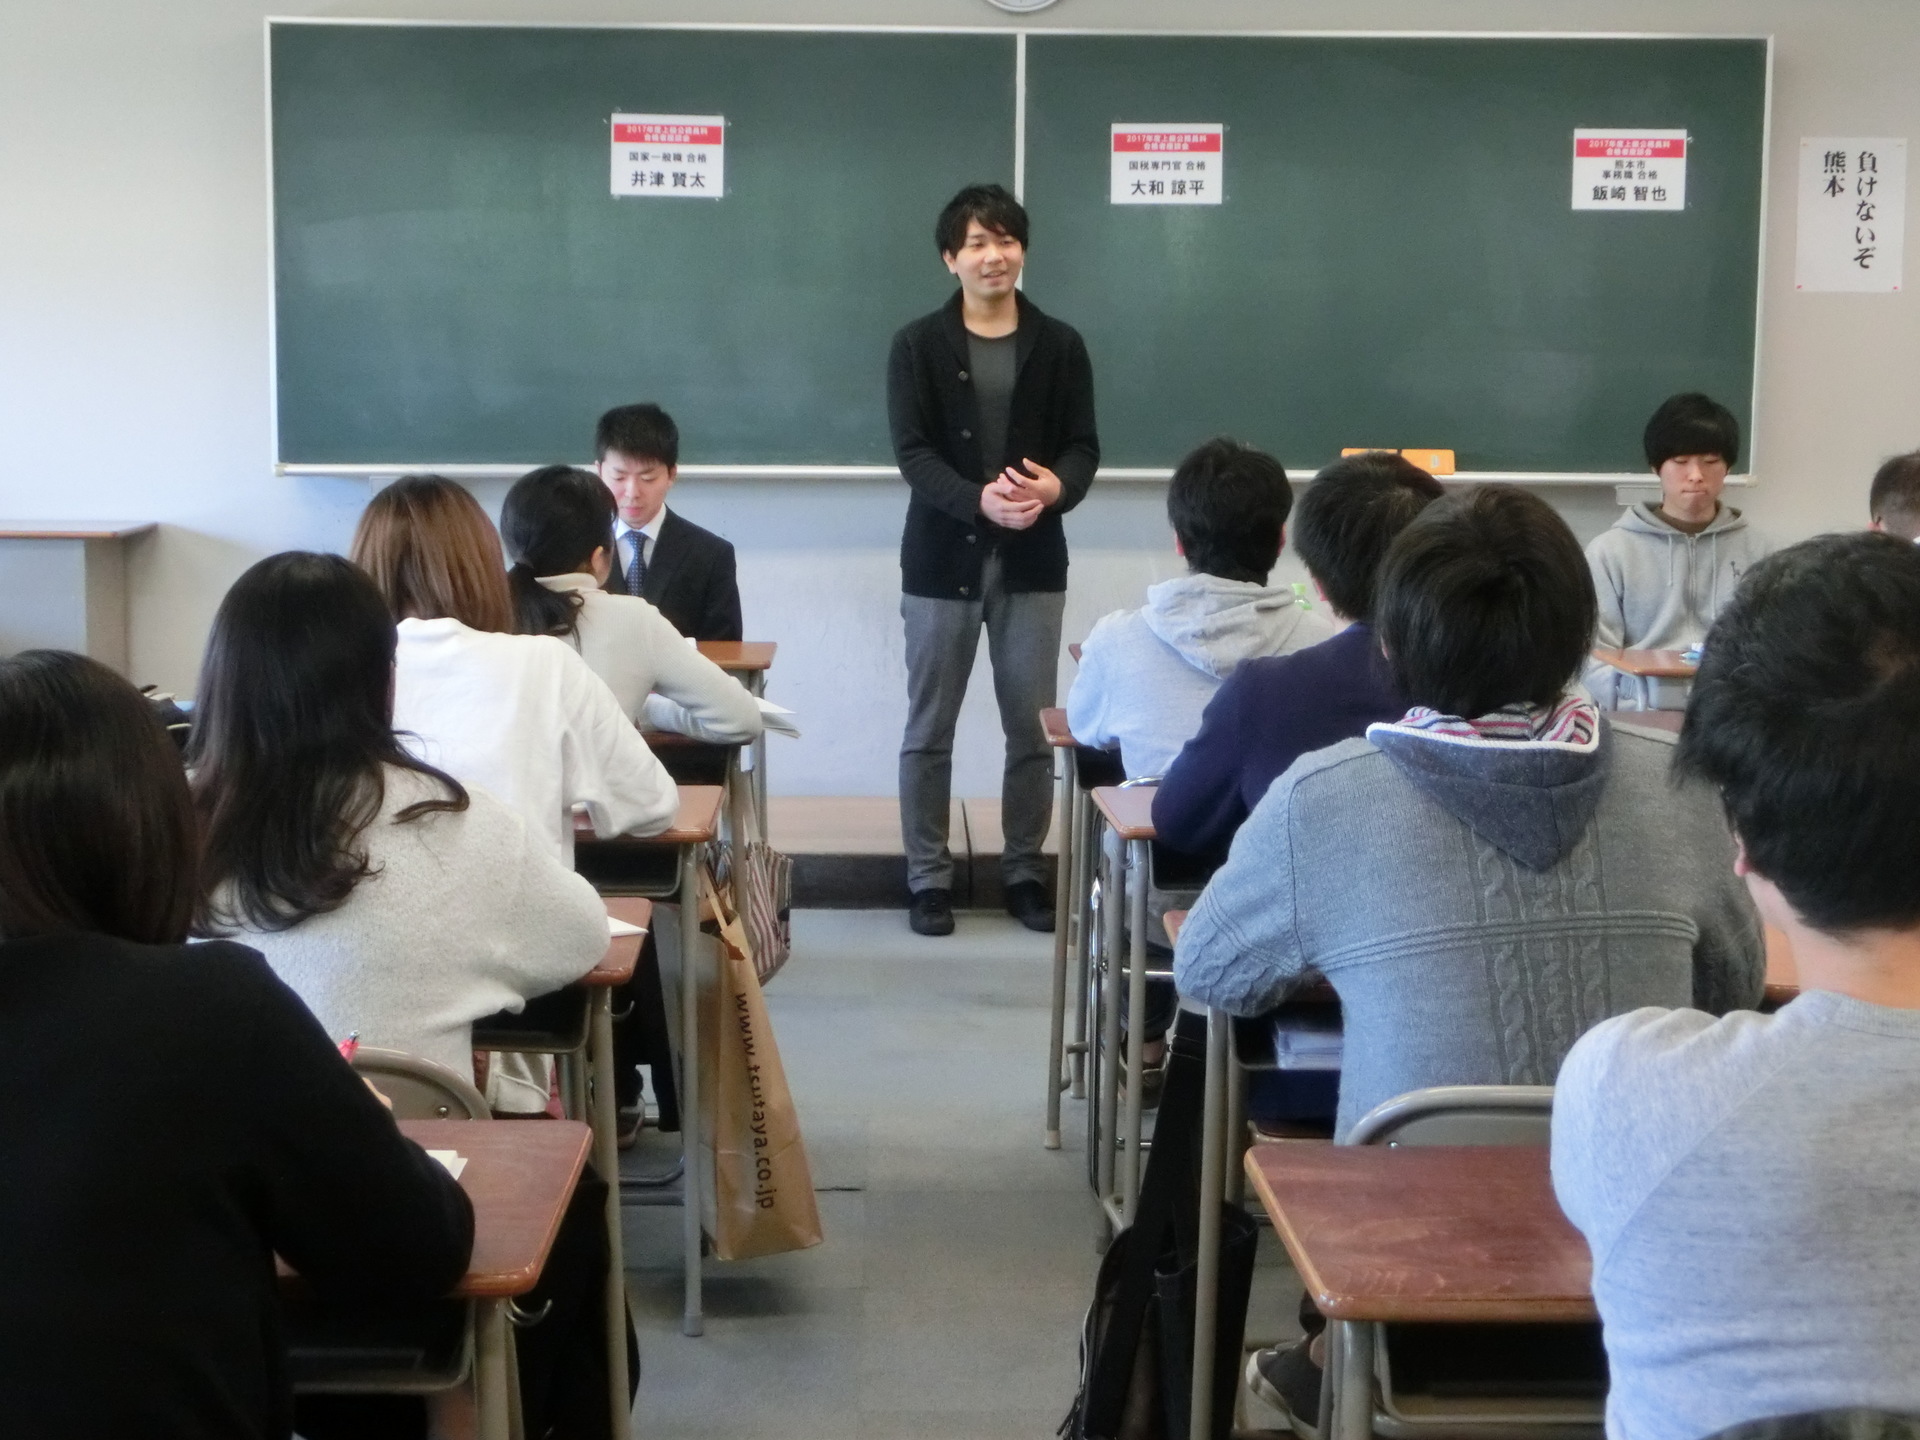 17年02月 東京アカデミー熊本校 教員採用試験 看護師国家試験 公務員試験 のブログ